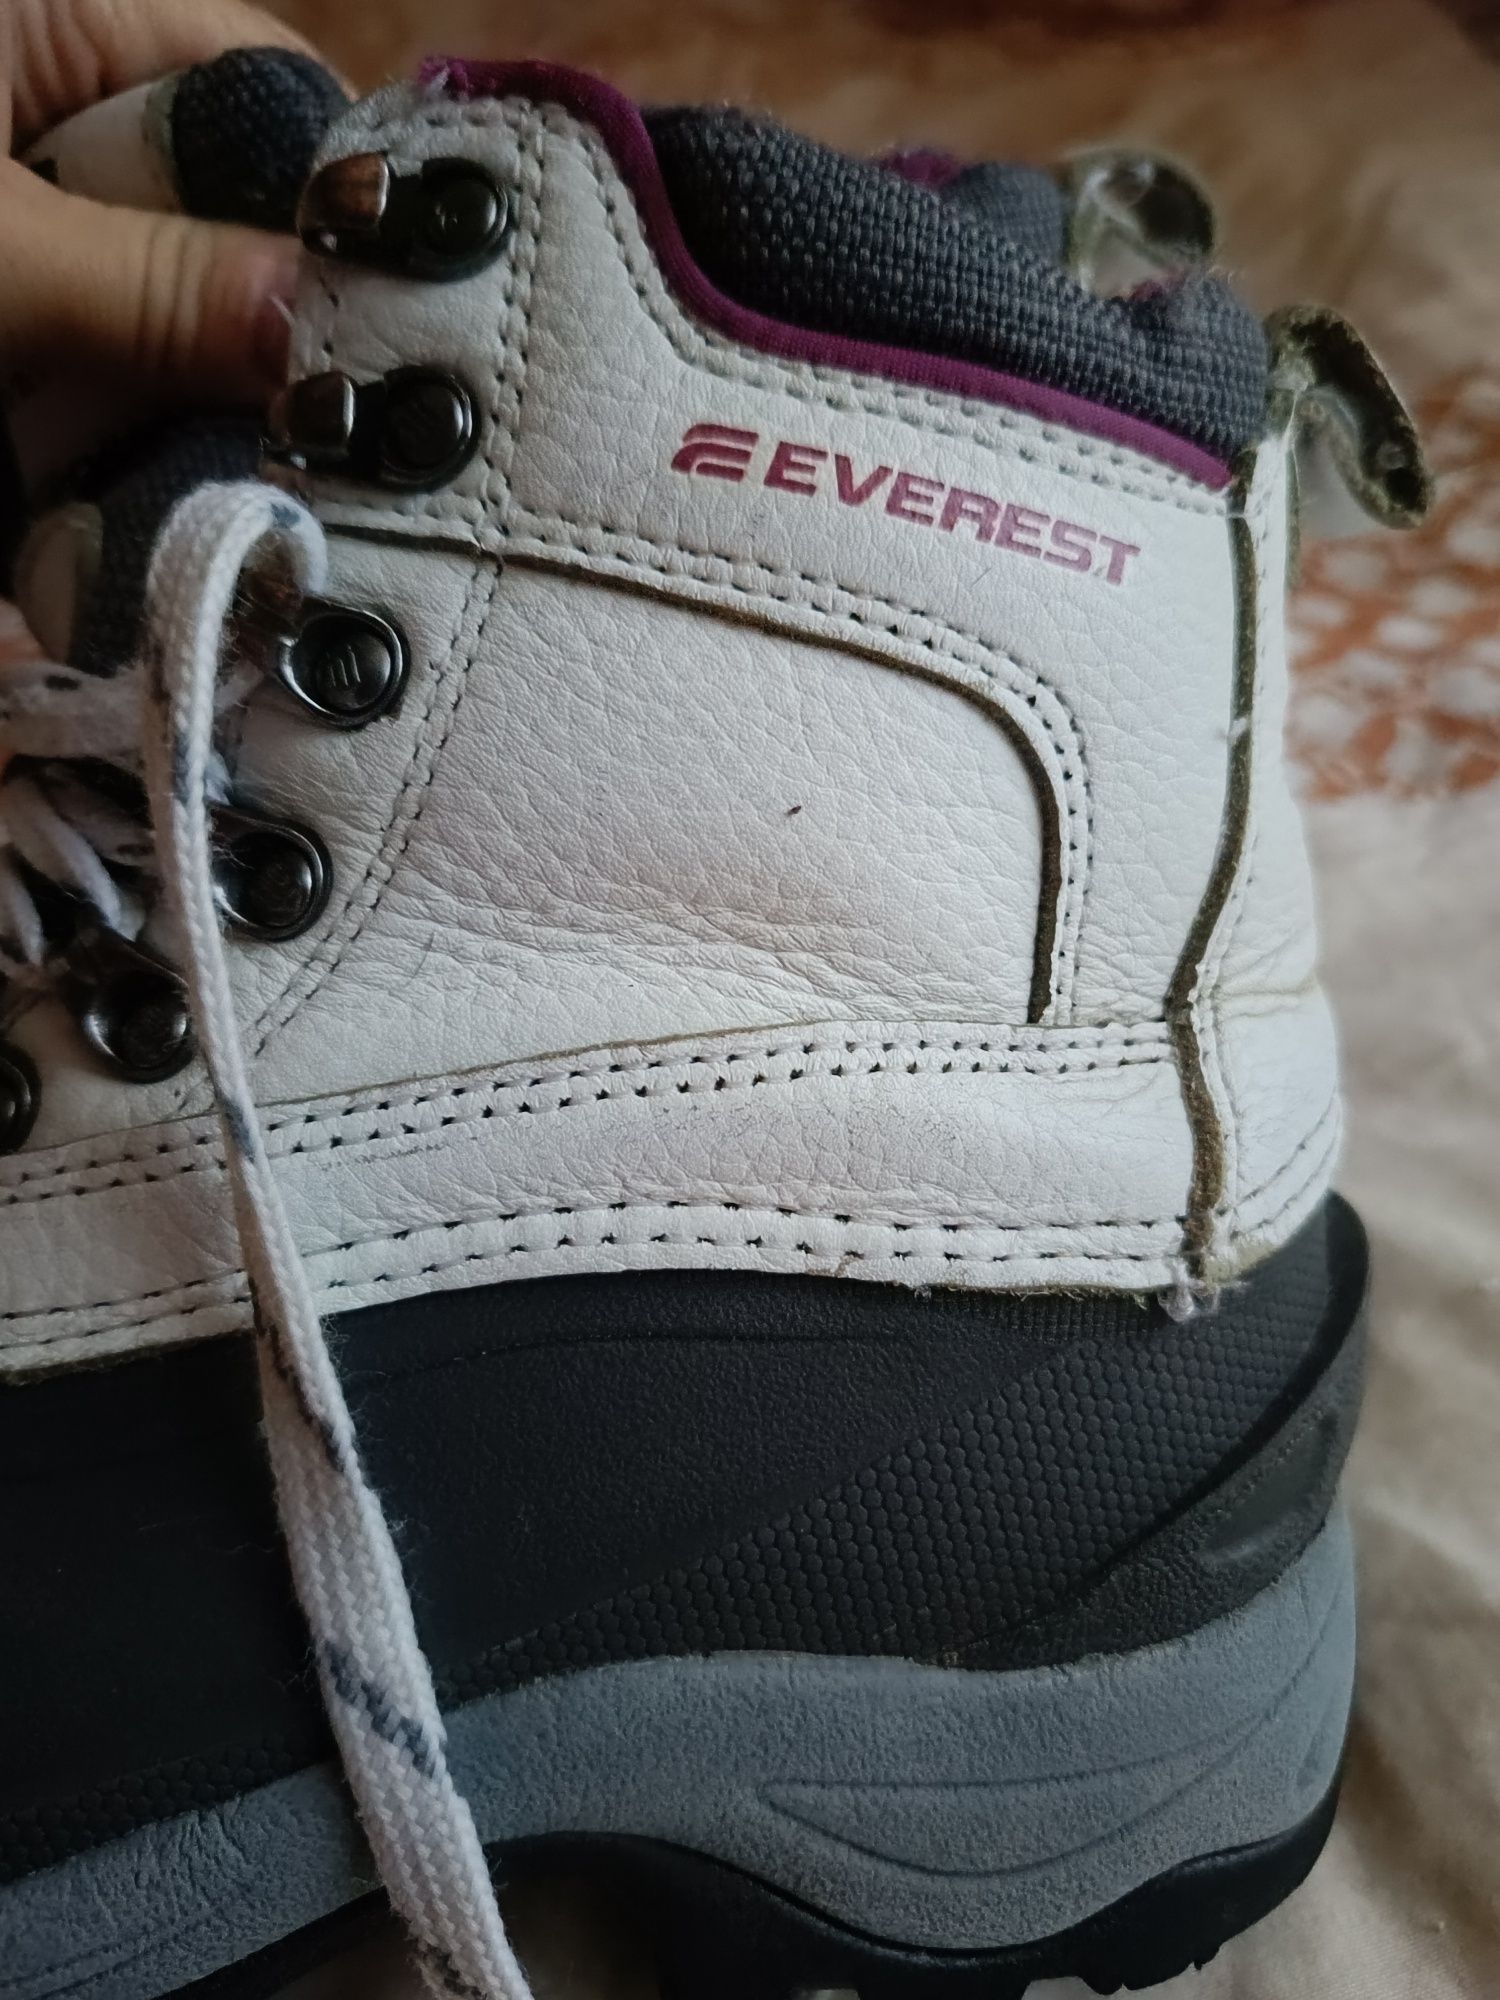 Зимові шкіряні чоботи термо Everest 35 (3) 36см устілка розмір